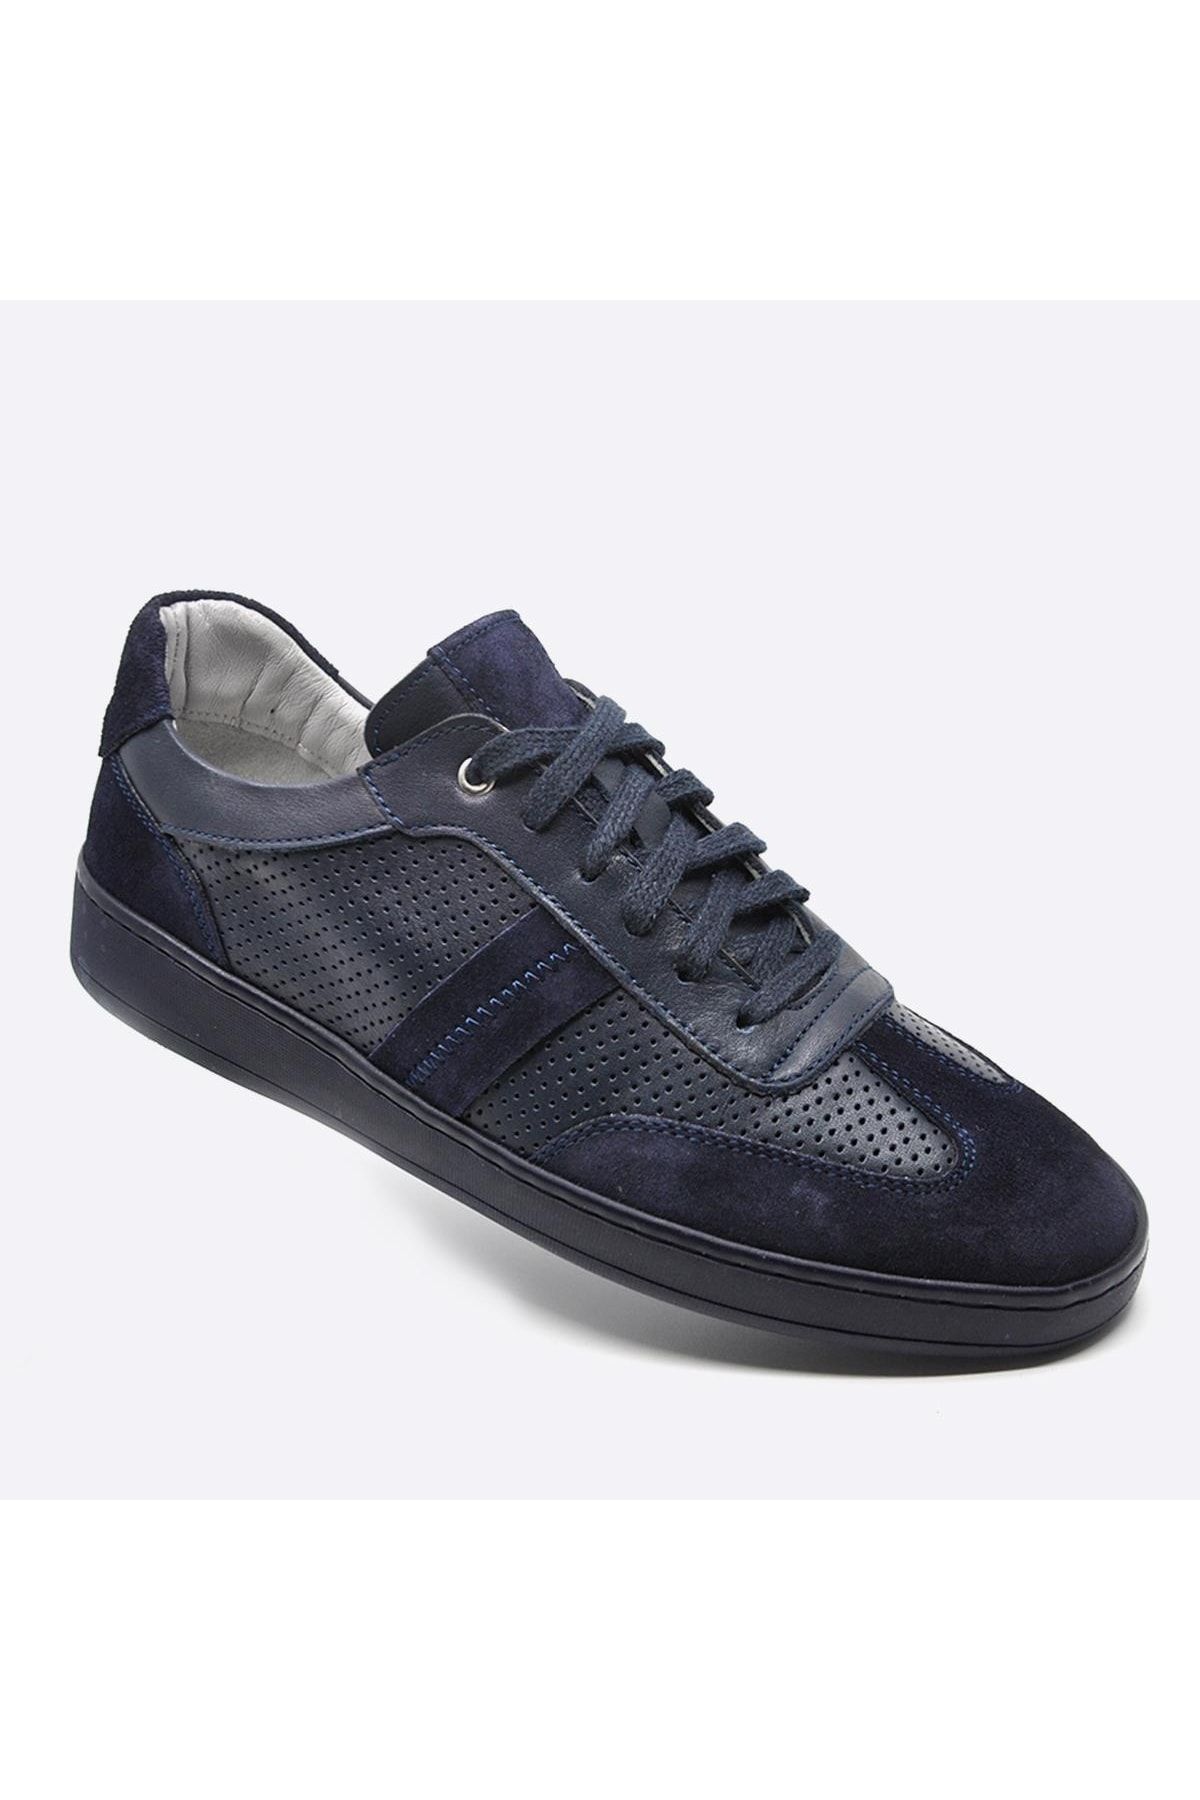 Fosco Hakiki Deri Sneaker Erkek Ayakkabı Lacivert 9870